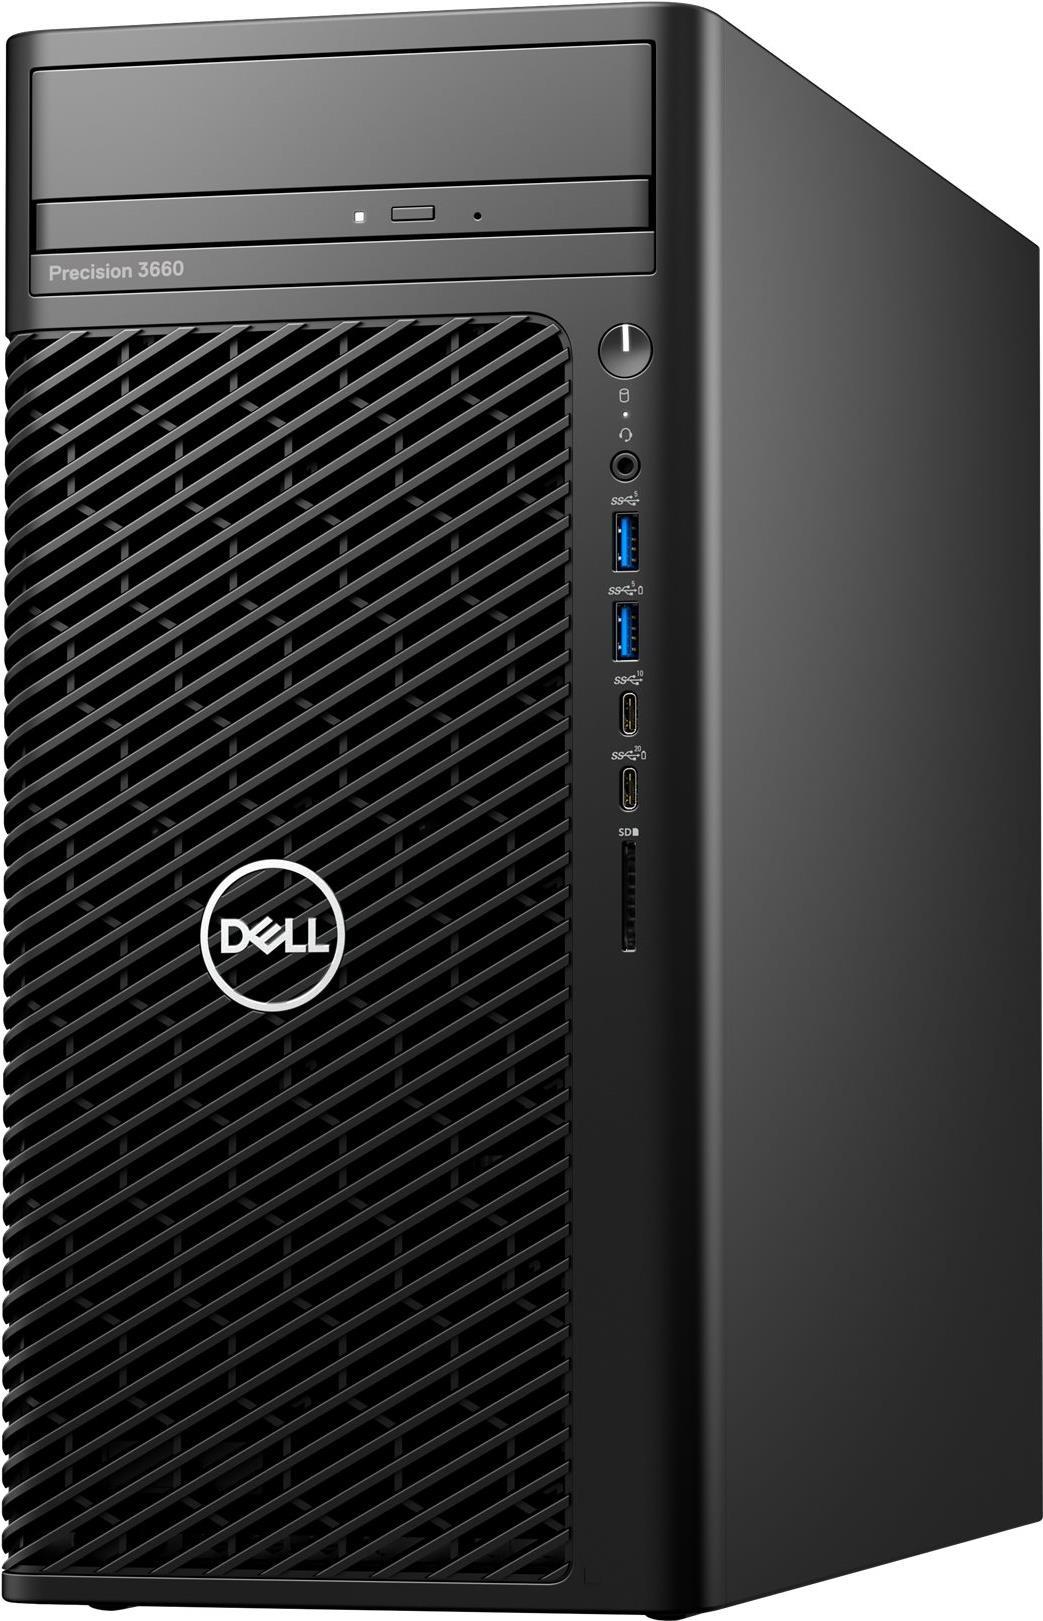 Dell Precision 3660 Tower - MT - 1 x Core i7 13700 / 2.1 GHz - vPro Enterprise - RAM 32 GB - SSD 1 TB - NVMe, Class 40 - DVD-Writer - T1000 - GigE - Win 11 Pro - Monitor: keiner - Schwarz - BTS - mit 3 Jahre Vor-Ort-Basisservice - Disti SNS von Dell